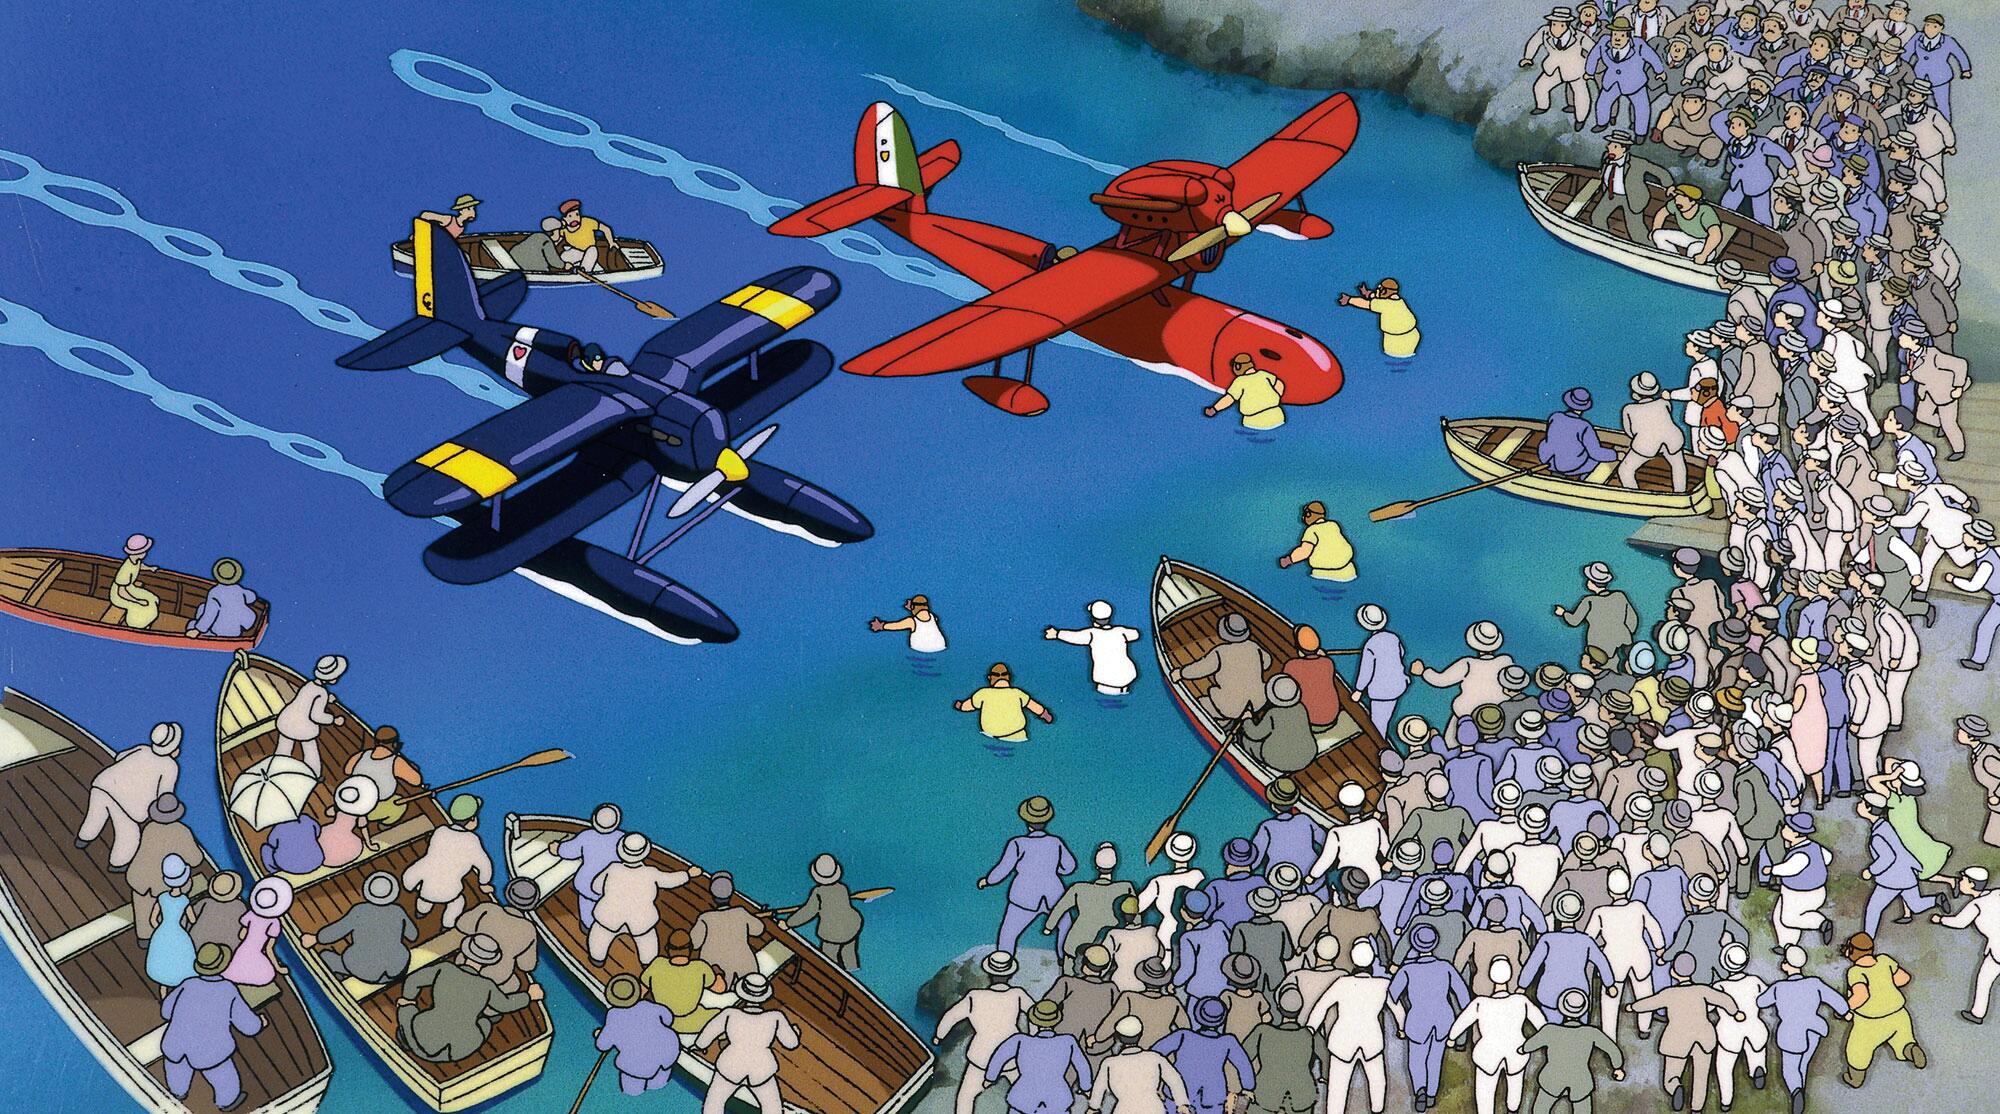 9- Porco Rosso (1992) Hayao Miyazaki